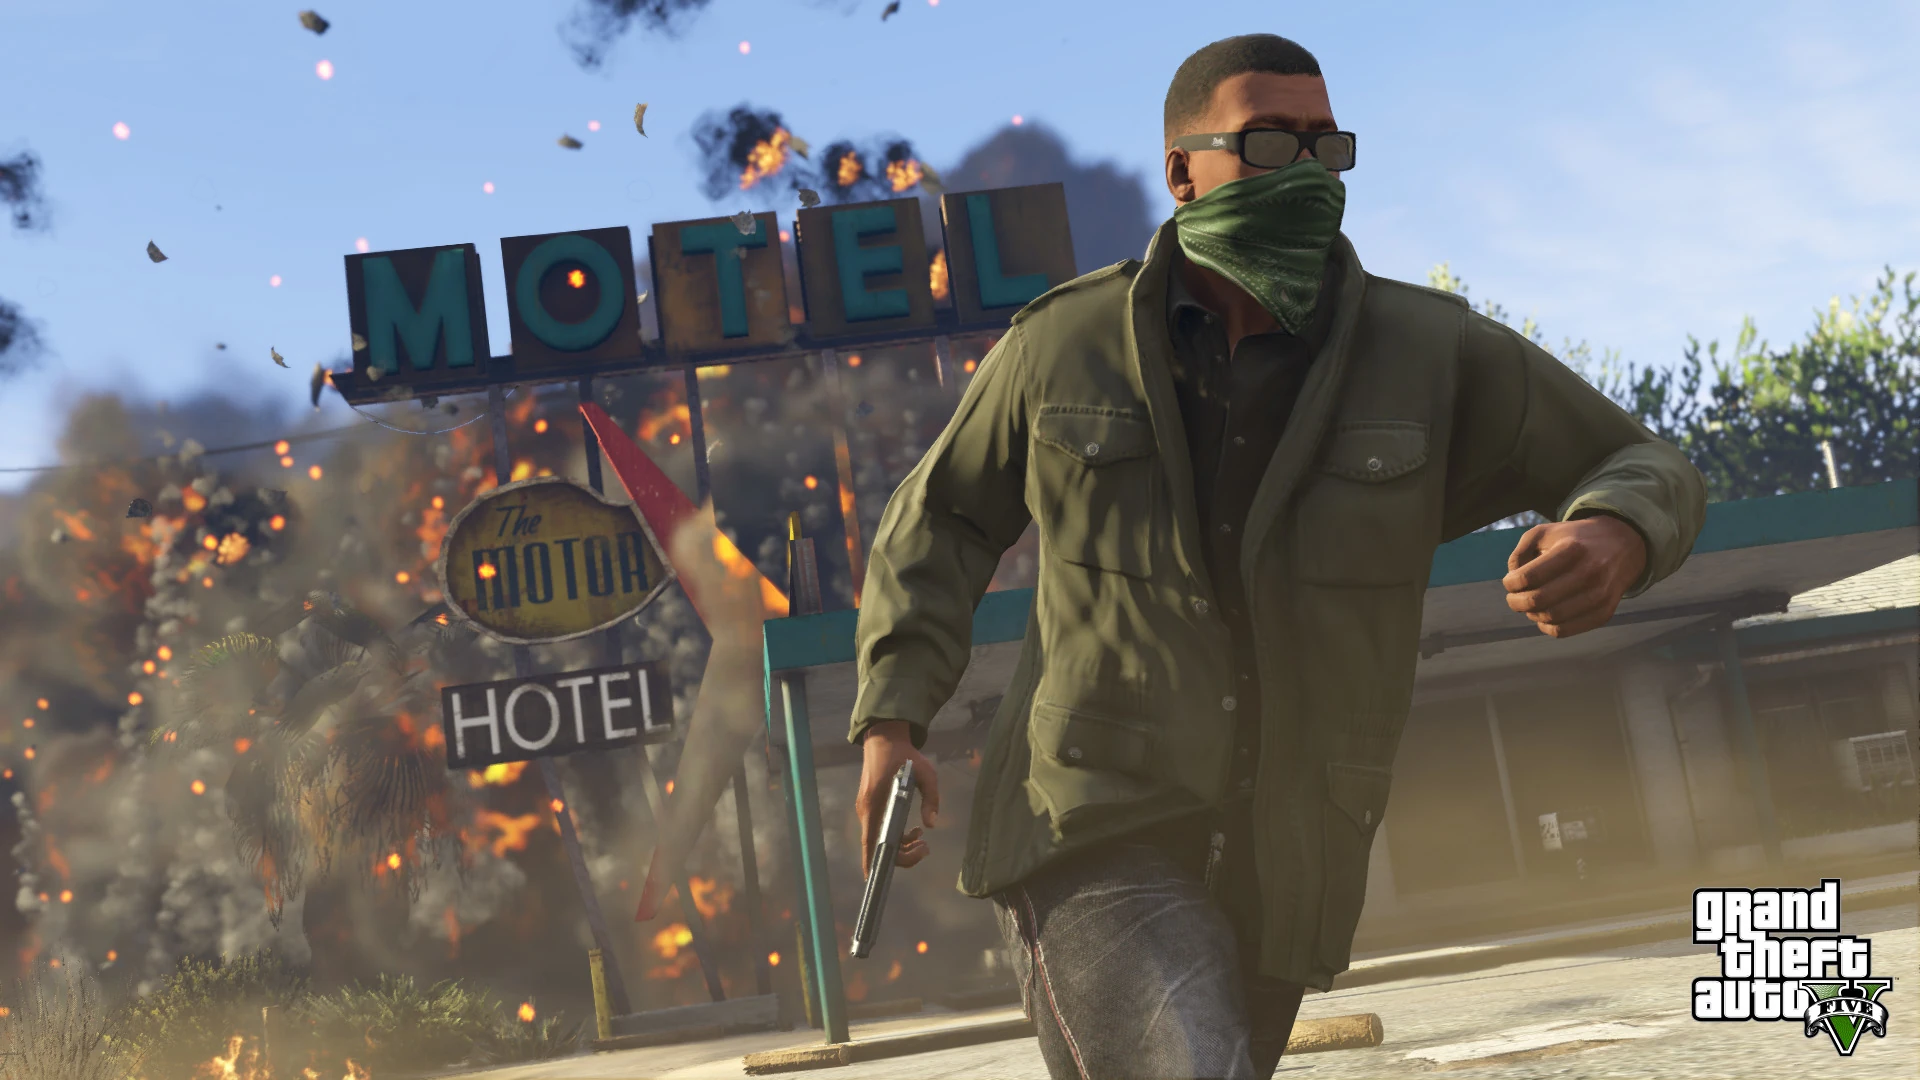 Grand Theft Auto V - PS4 Screenshot 05 - Explosão